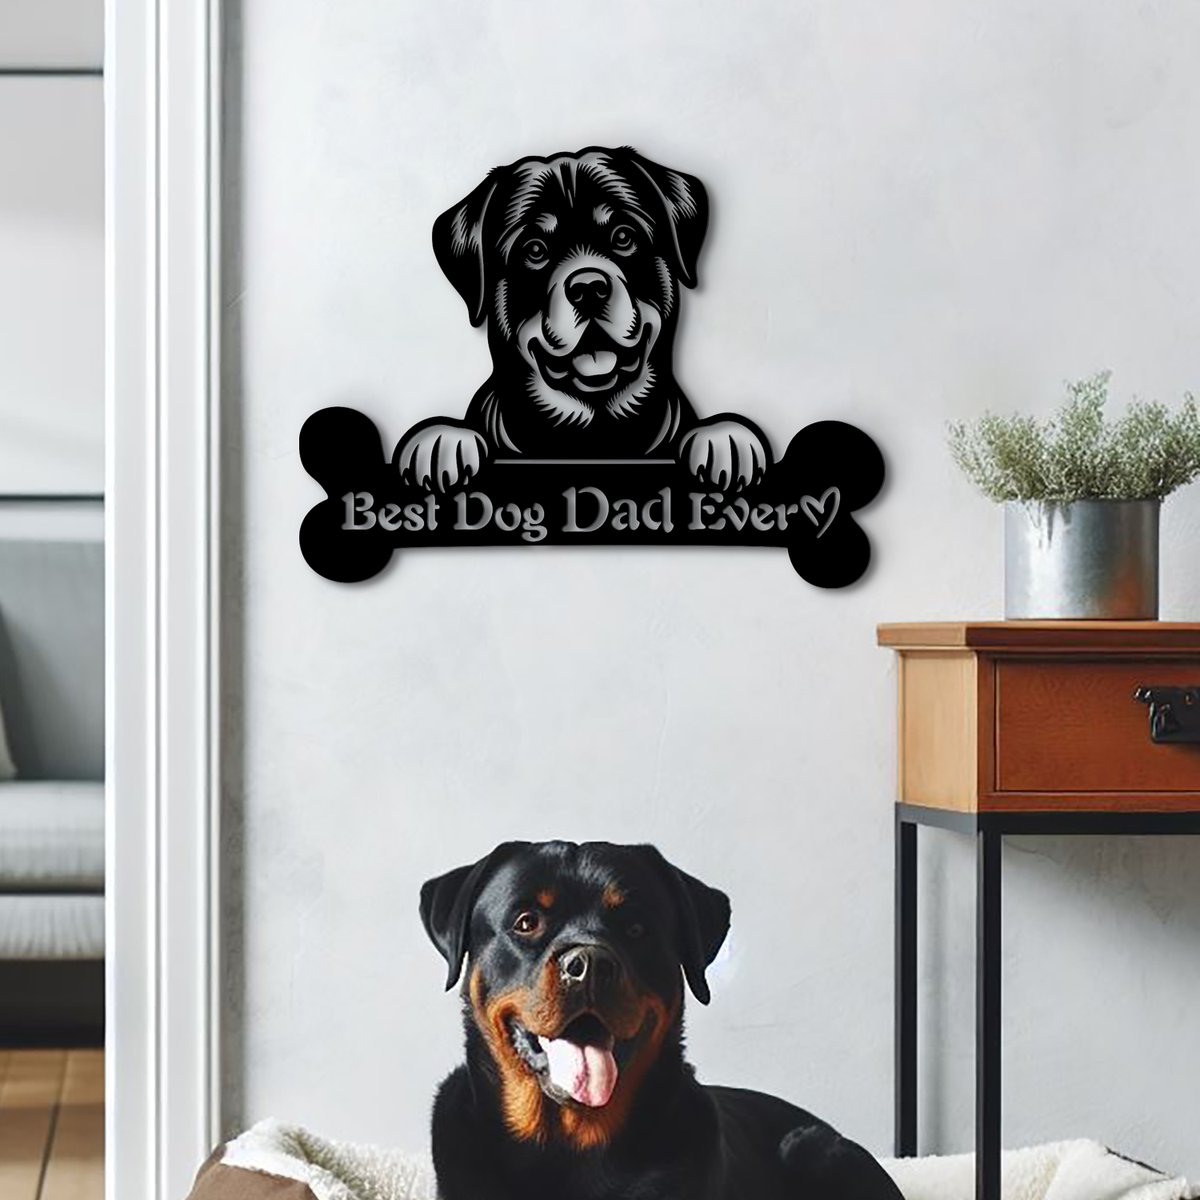 Custom Rottweiler name sign. Best dog dad ever! woodyardstore.etsy.com/listing/170805… #rottweiler #FathersDay #dad #father #doglovers #dogsarefriends #dogoftheday #dogoftwitter #sundayvibes #sundaygame #SundayMorning #Etsy #etsyfind #etsygifts @Etsy @Rottweilerl @Crazyrottweile1 #WallArtDecor